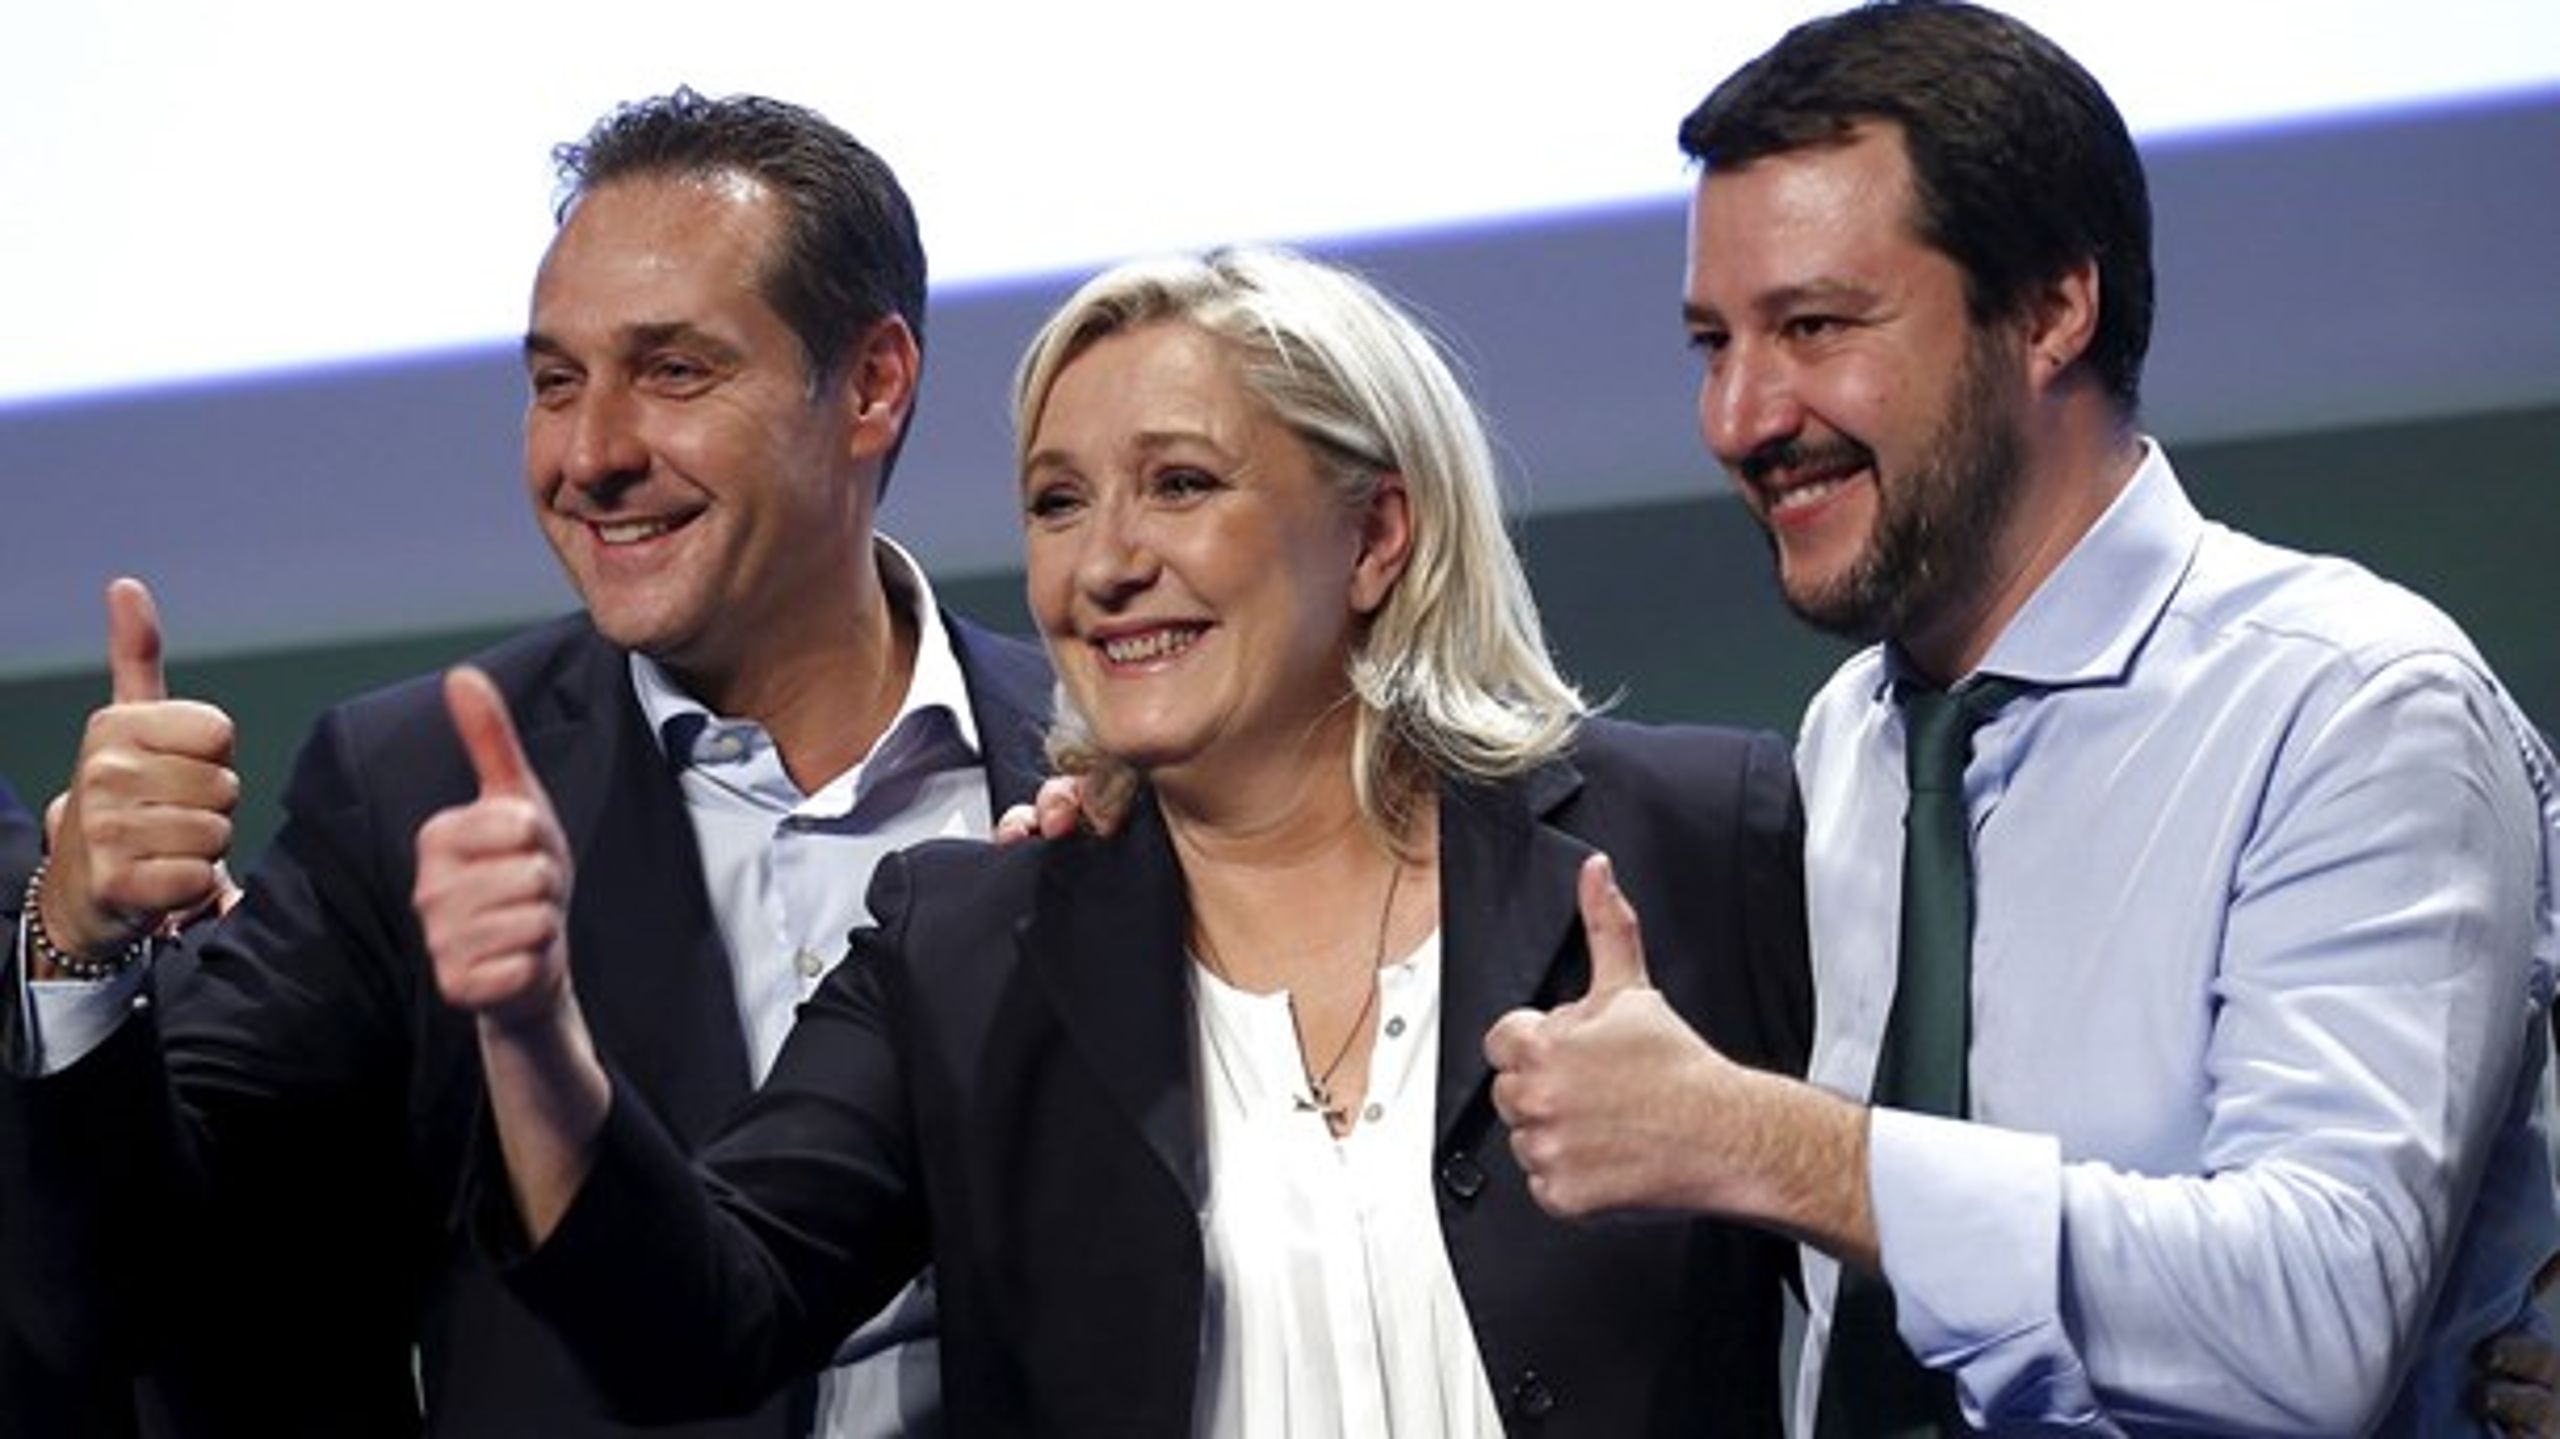 Det højrenationale La Lega, der kan blive EU-Parlamentets største parti ved næste valg,&nbsp;sidder til daglig i gruppe med&nbsp;det østrigske Frihedsparti, her repræsenteret ved formand Heinz-Christian Strache (t.v.),&nbsp; og Rassemblement Nationals Marine Le Pen (m.f.).&nbsp;Nu rækker formand&nbsp;Matteo Salvini (t.h.) ud efter andre dele af det højrenationale europæiske spektrum ved at invitere blandt andre&nbsp;Dansk Folkeparti til møde i Milano.